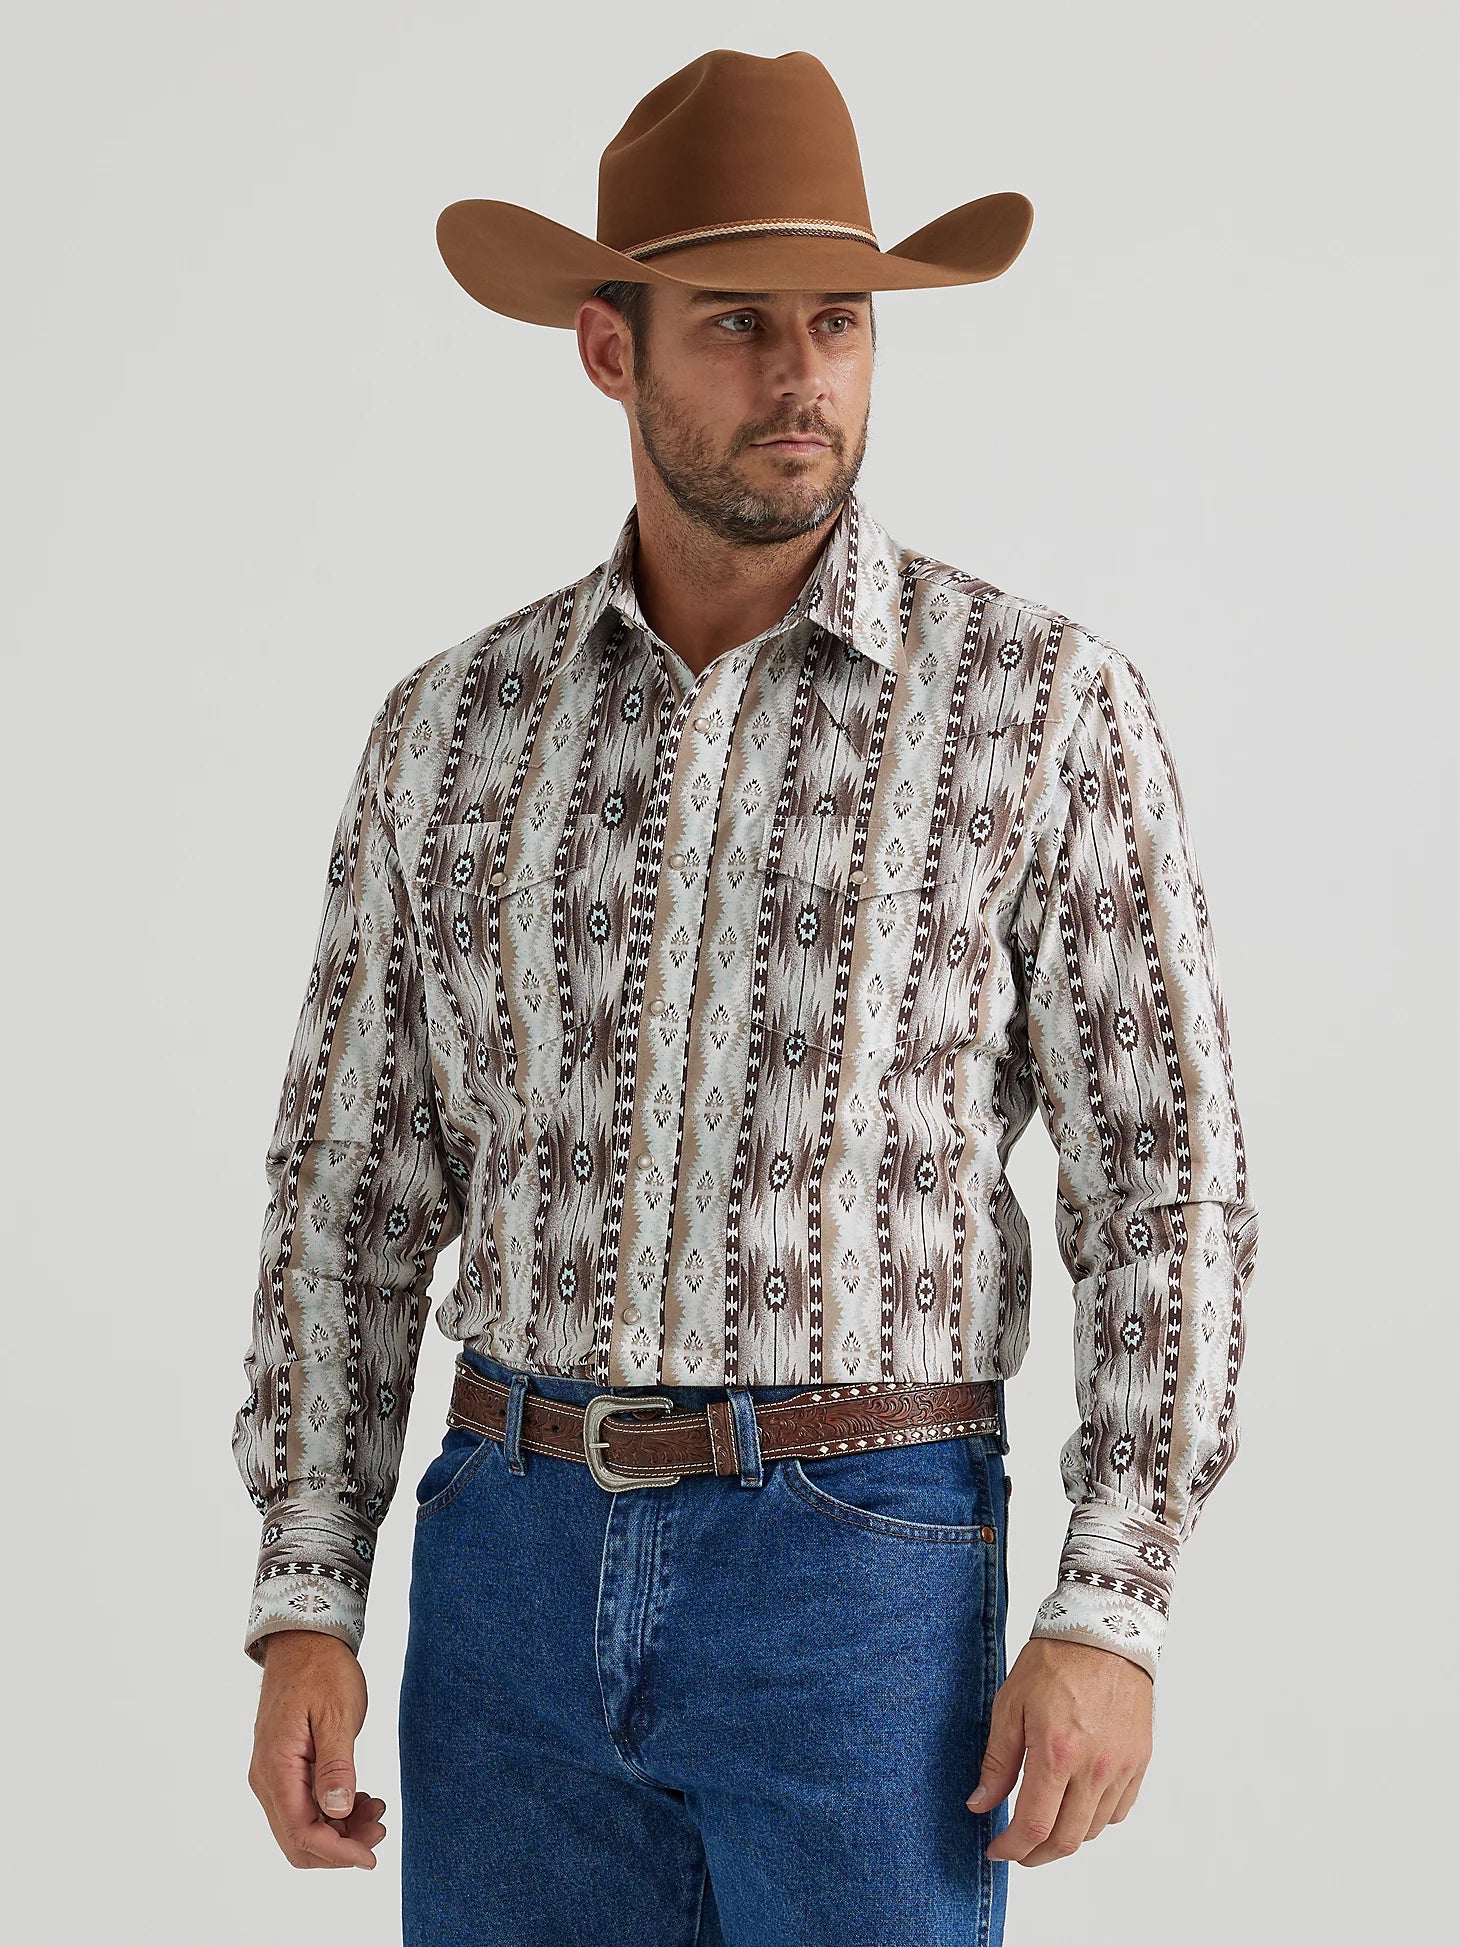 Wrangler Men's Checotah Print Western Shirt - Sand